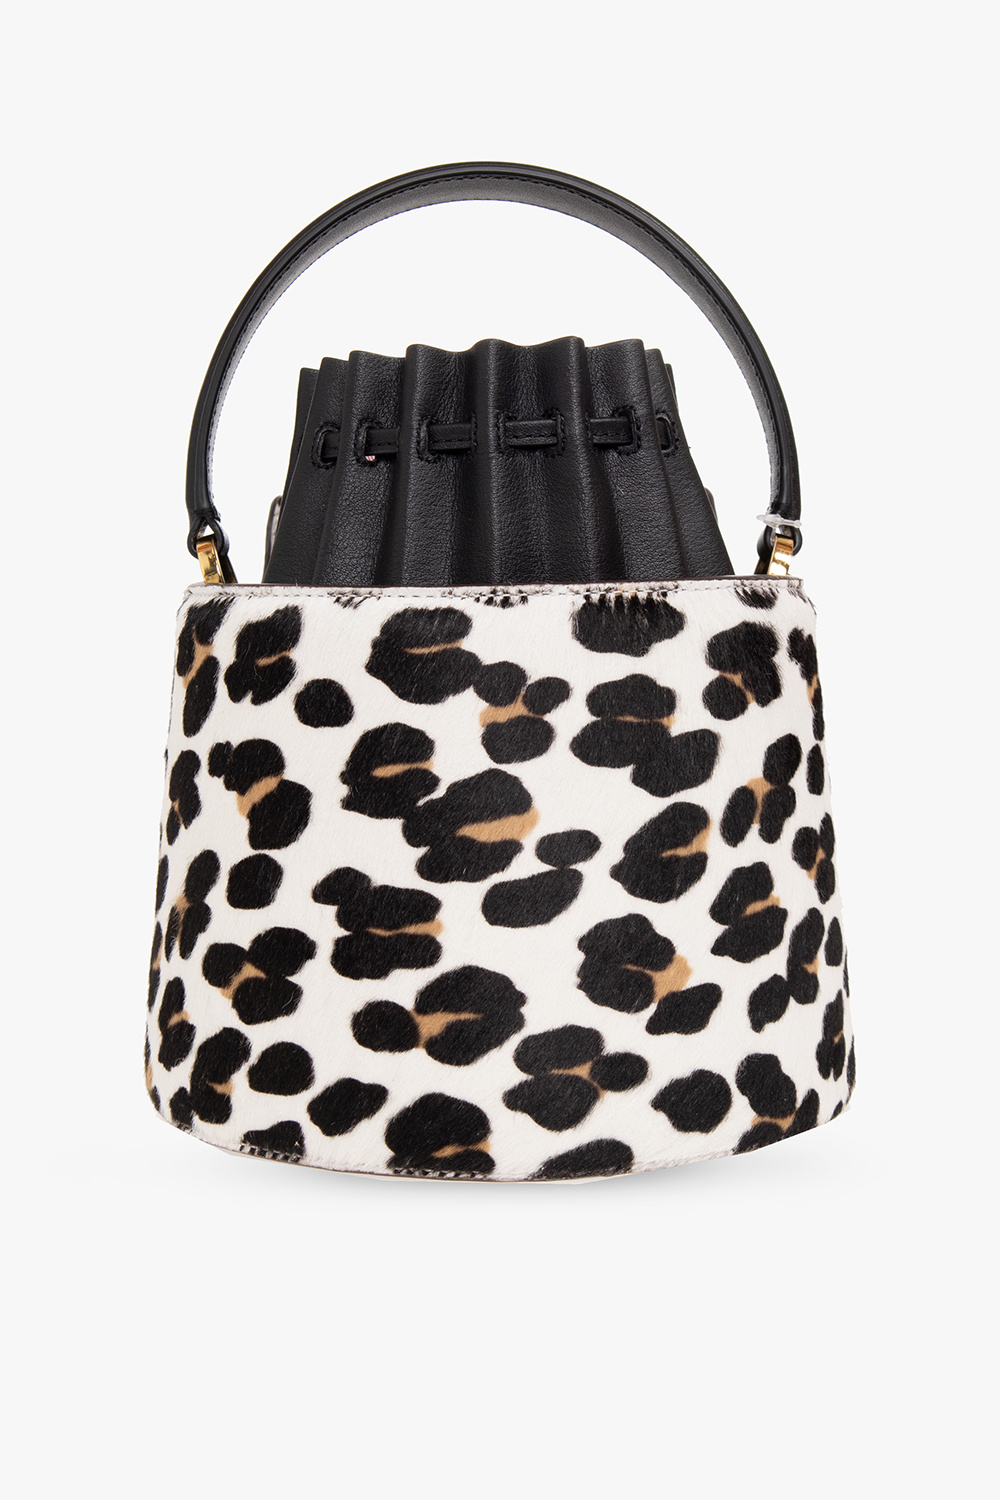 Kate Spade ‘Buttercup Leopard Small’ bucket hat